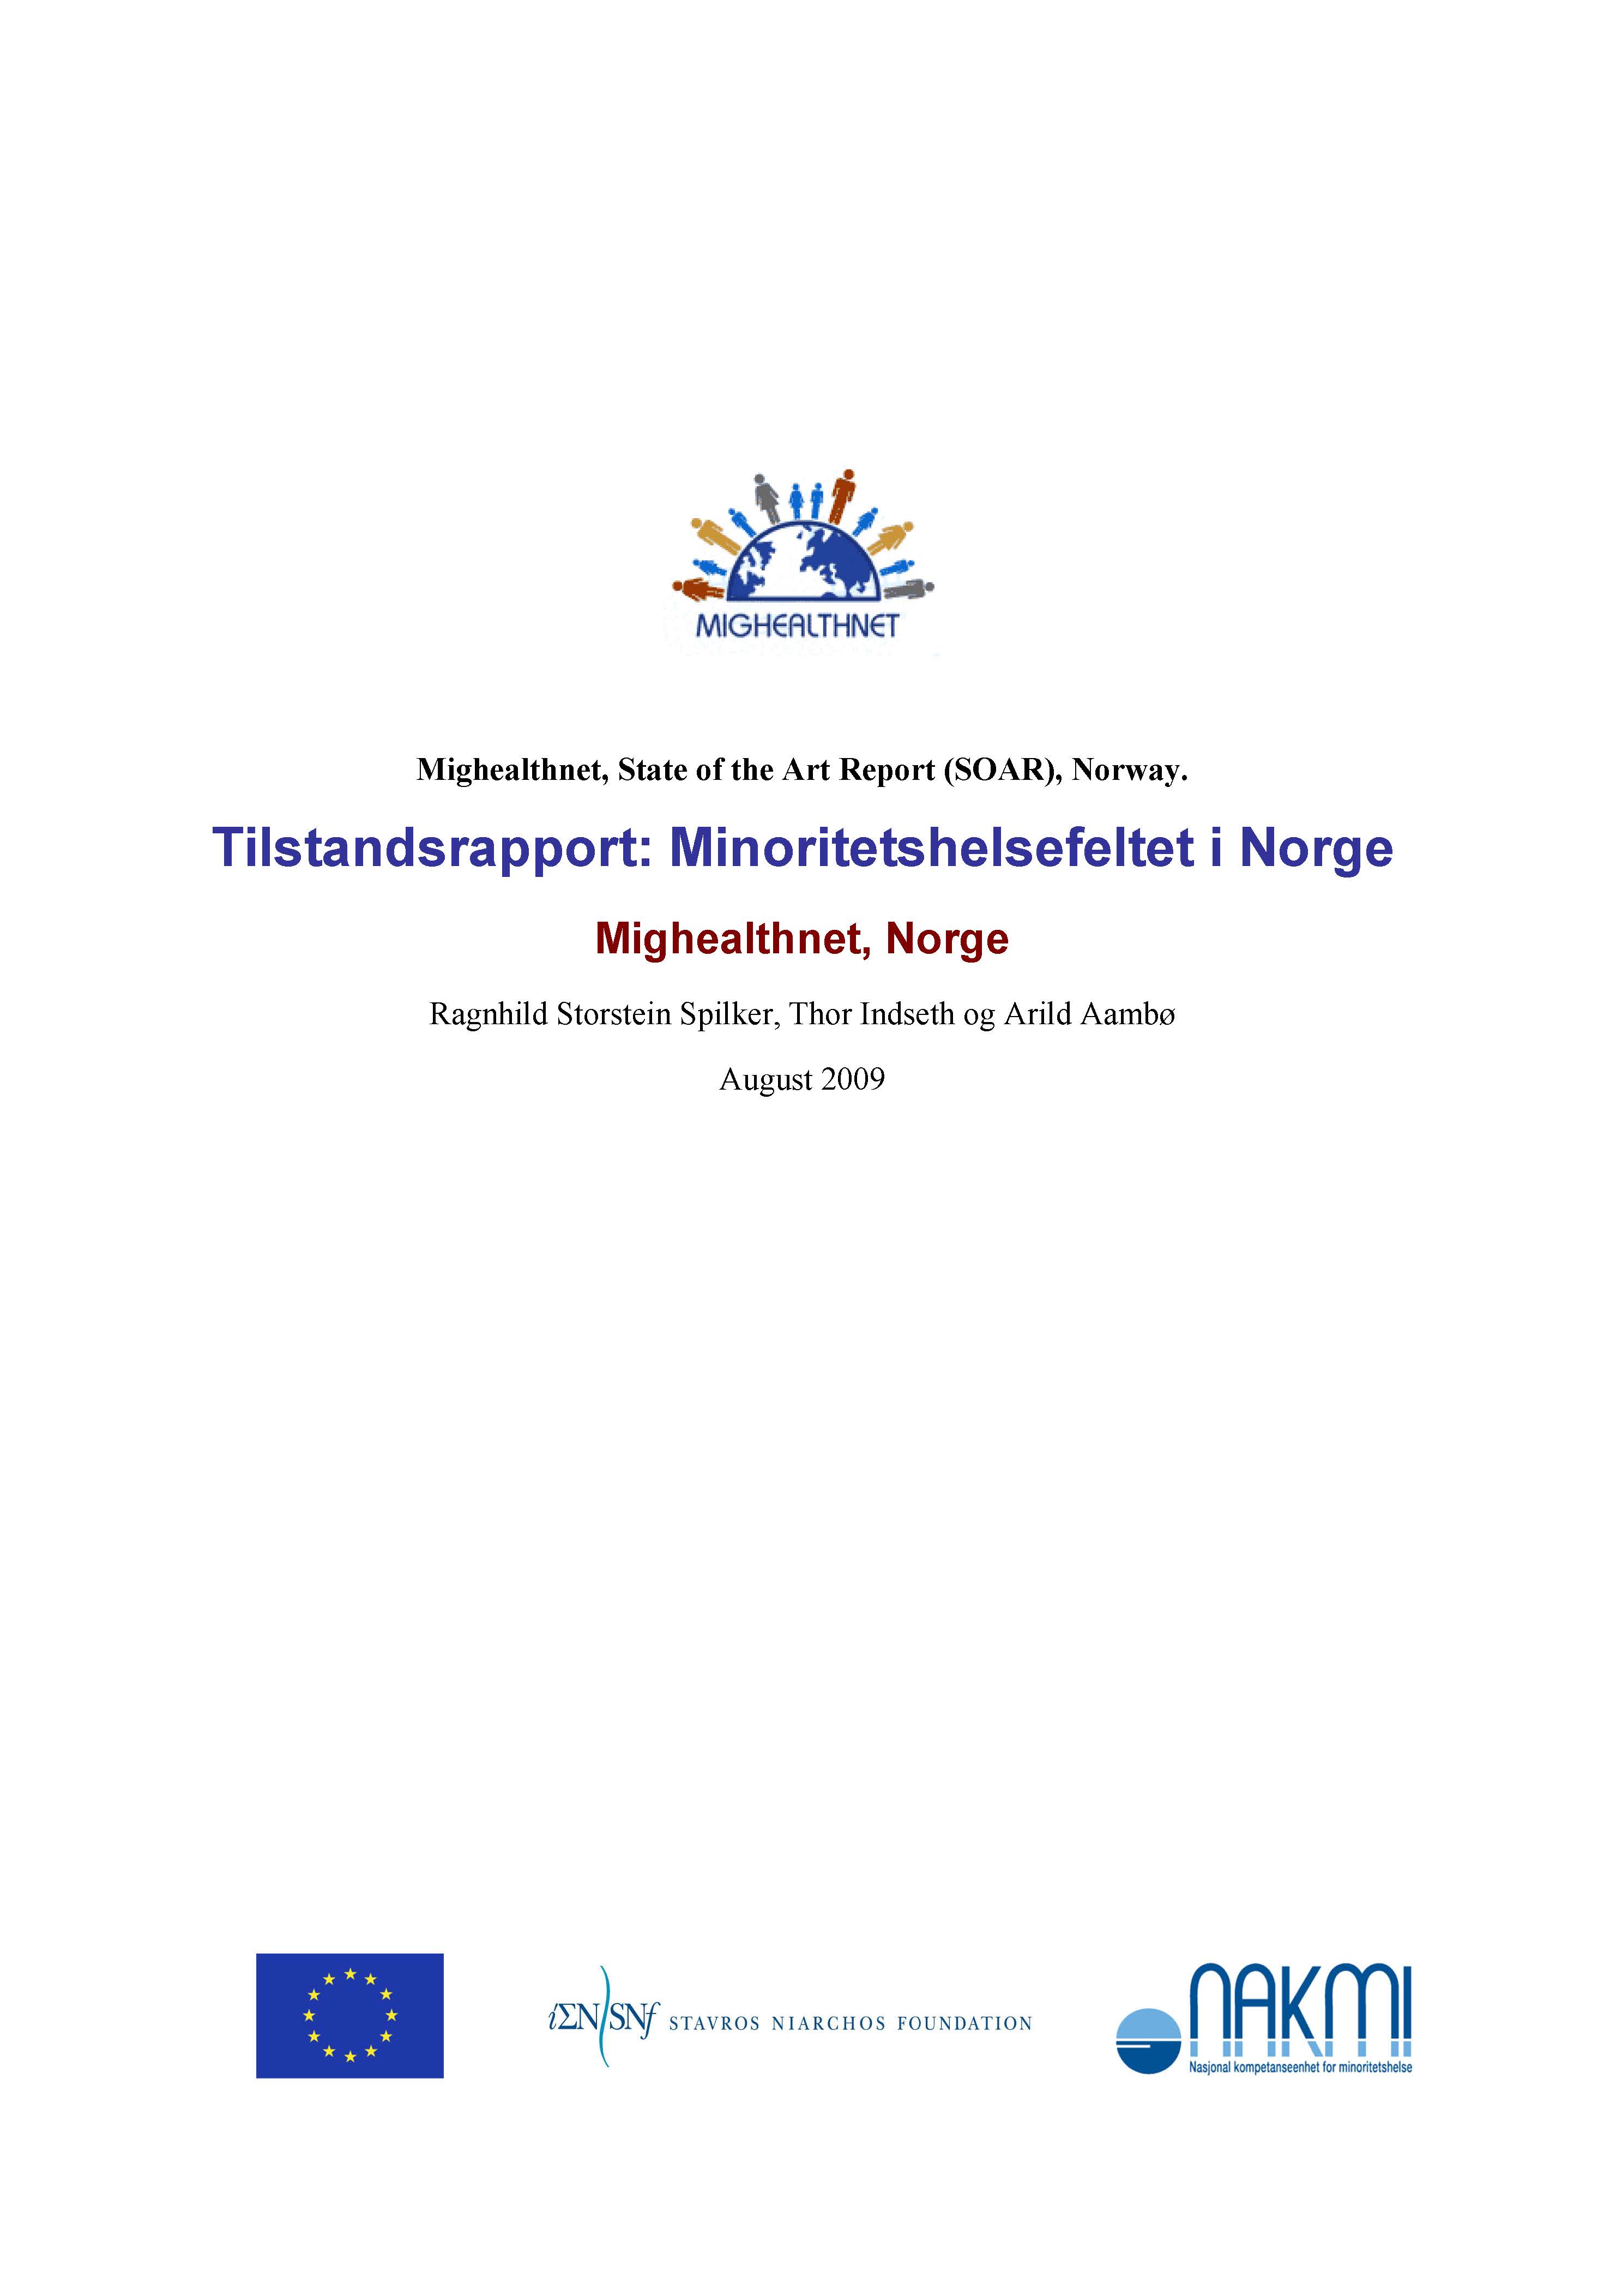 Tilstandsrapport-Minoritetshelsefeltet-i-Norge-mighealthnet-2009_Side_01.jpg